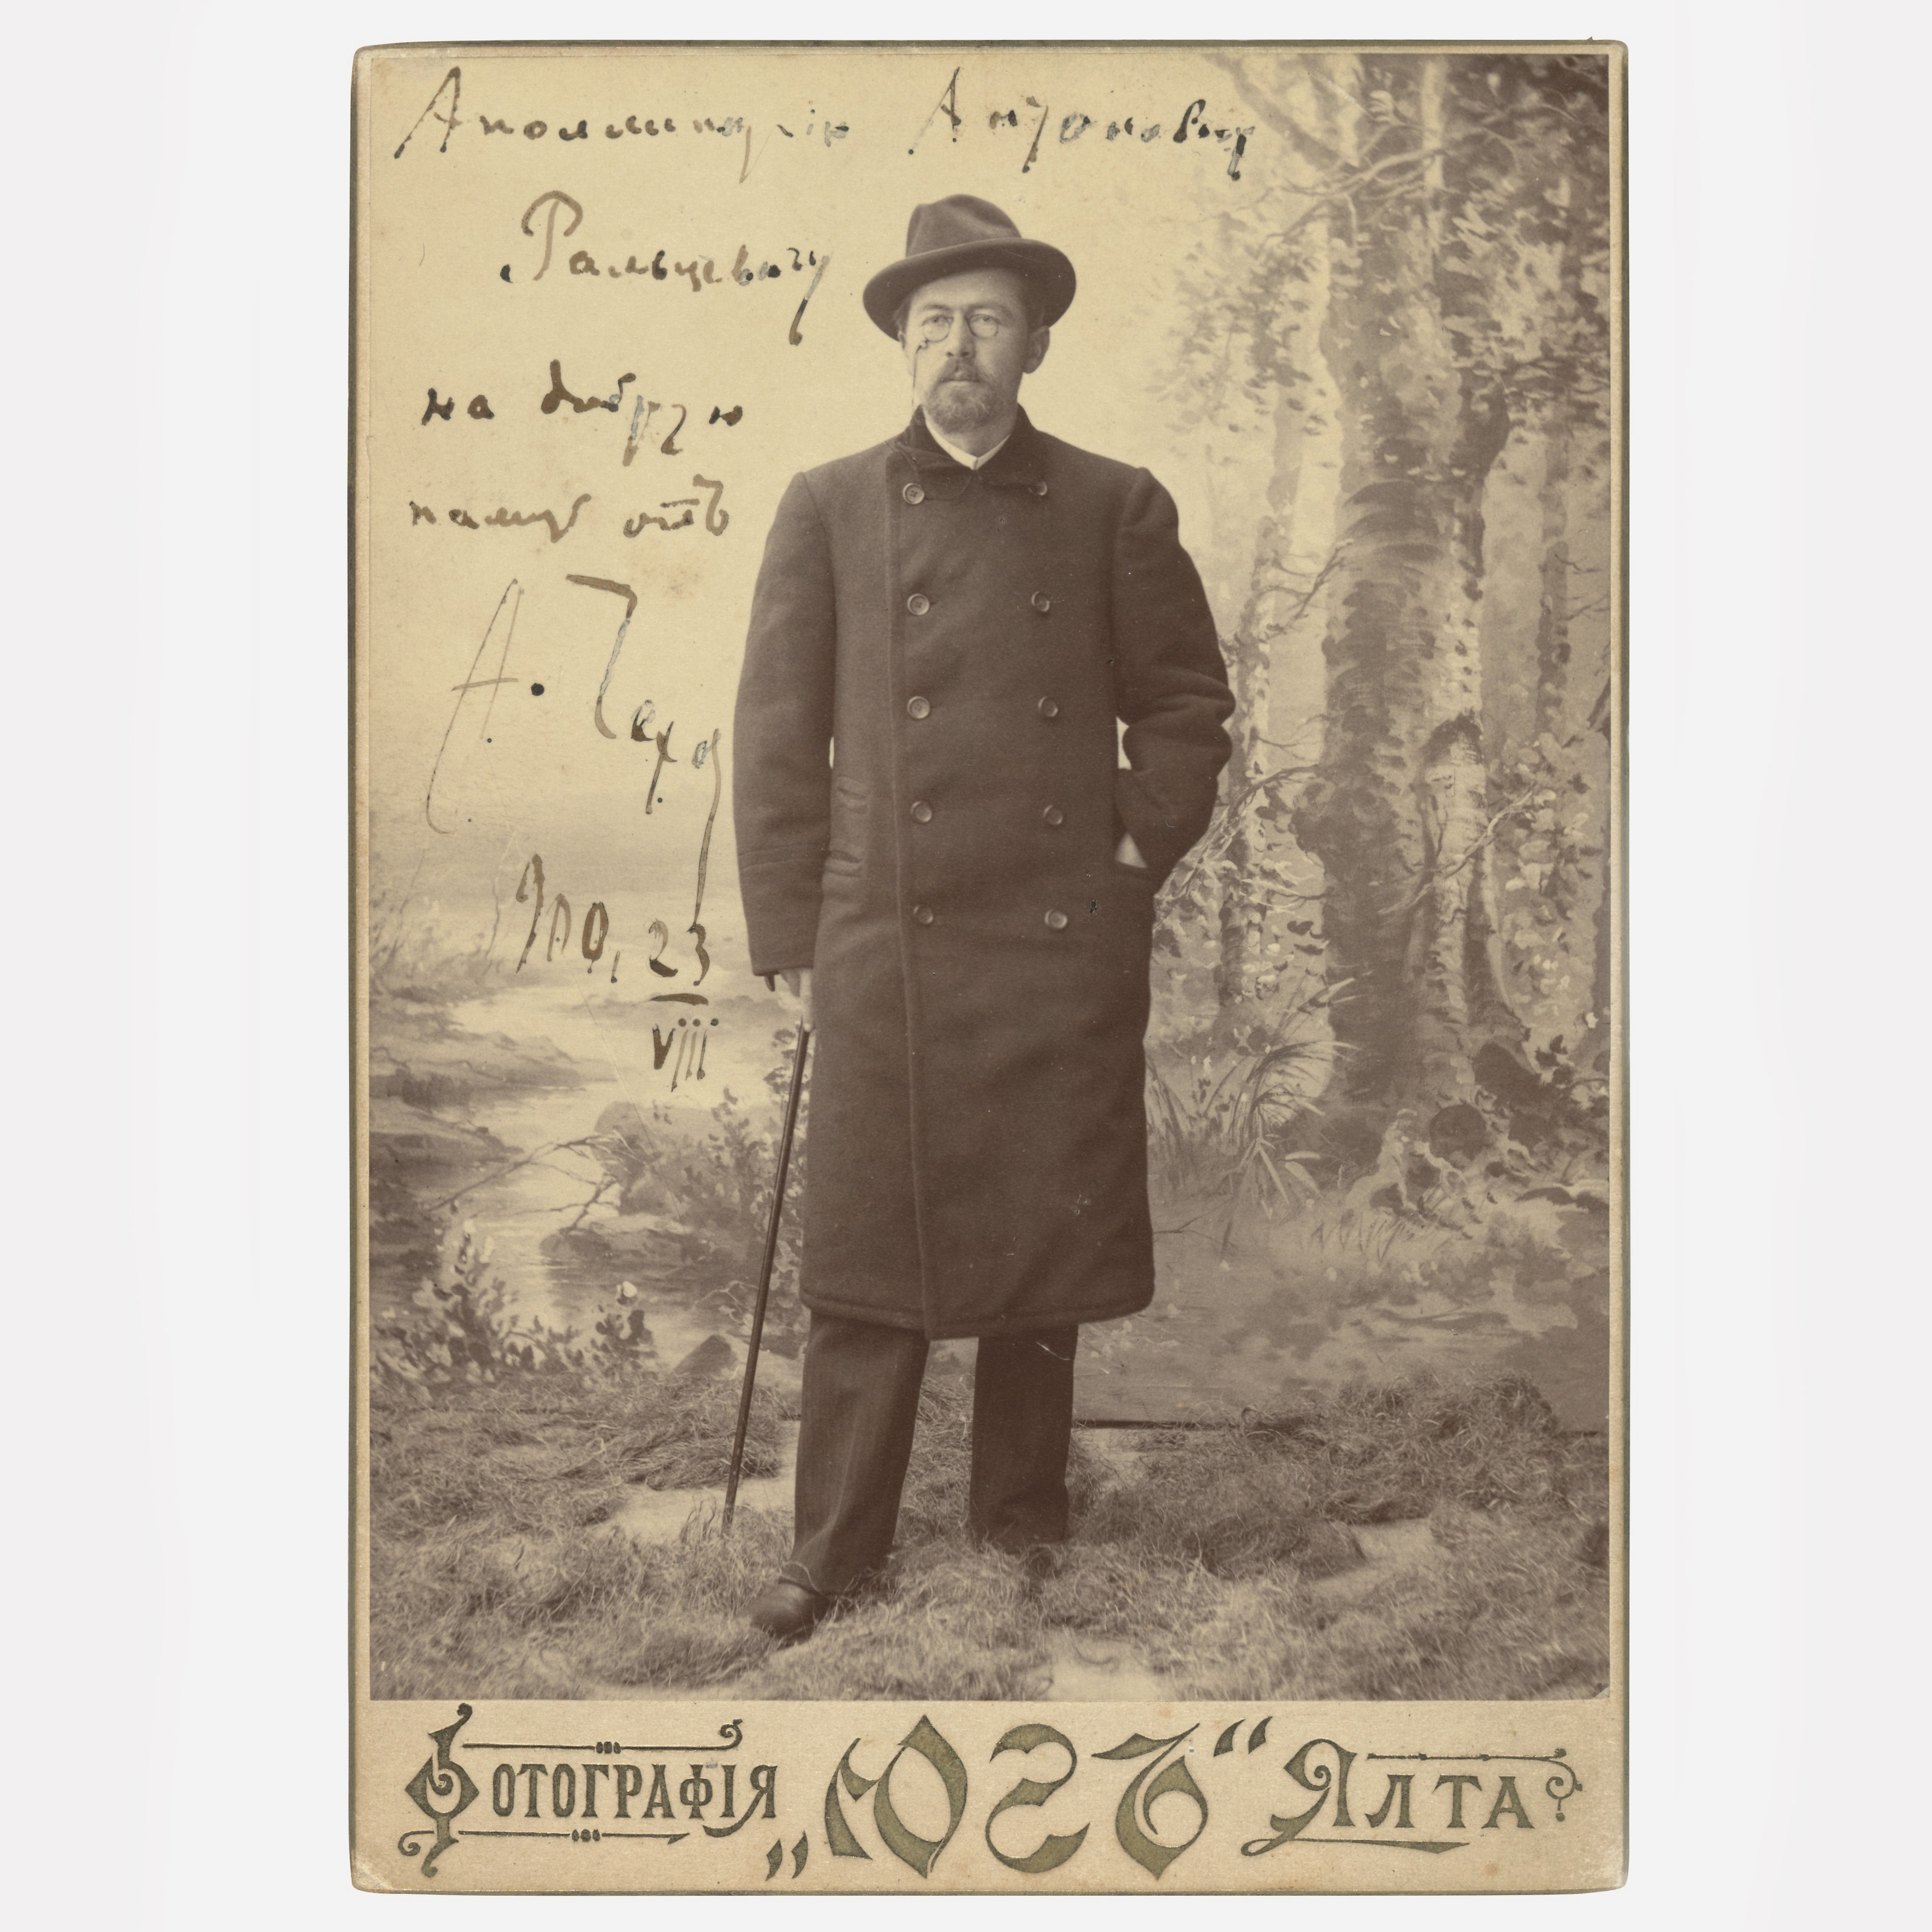 Фотография Антона Чехова в Ялте, 1900 / Эстимейт £3,000-5,000 / Фото Christieʹs